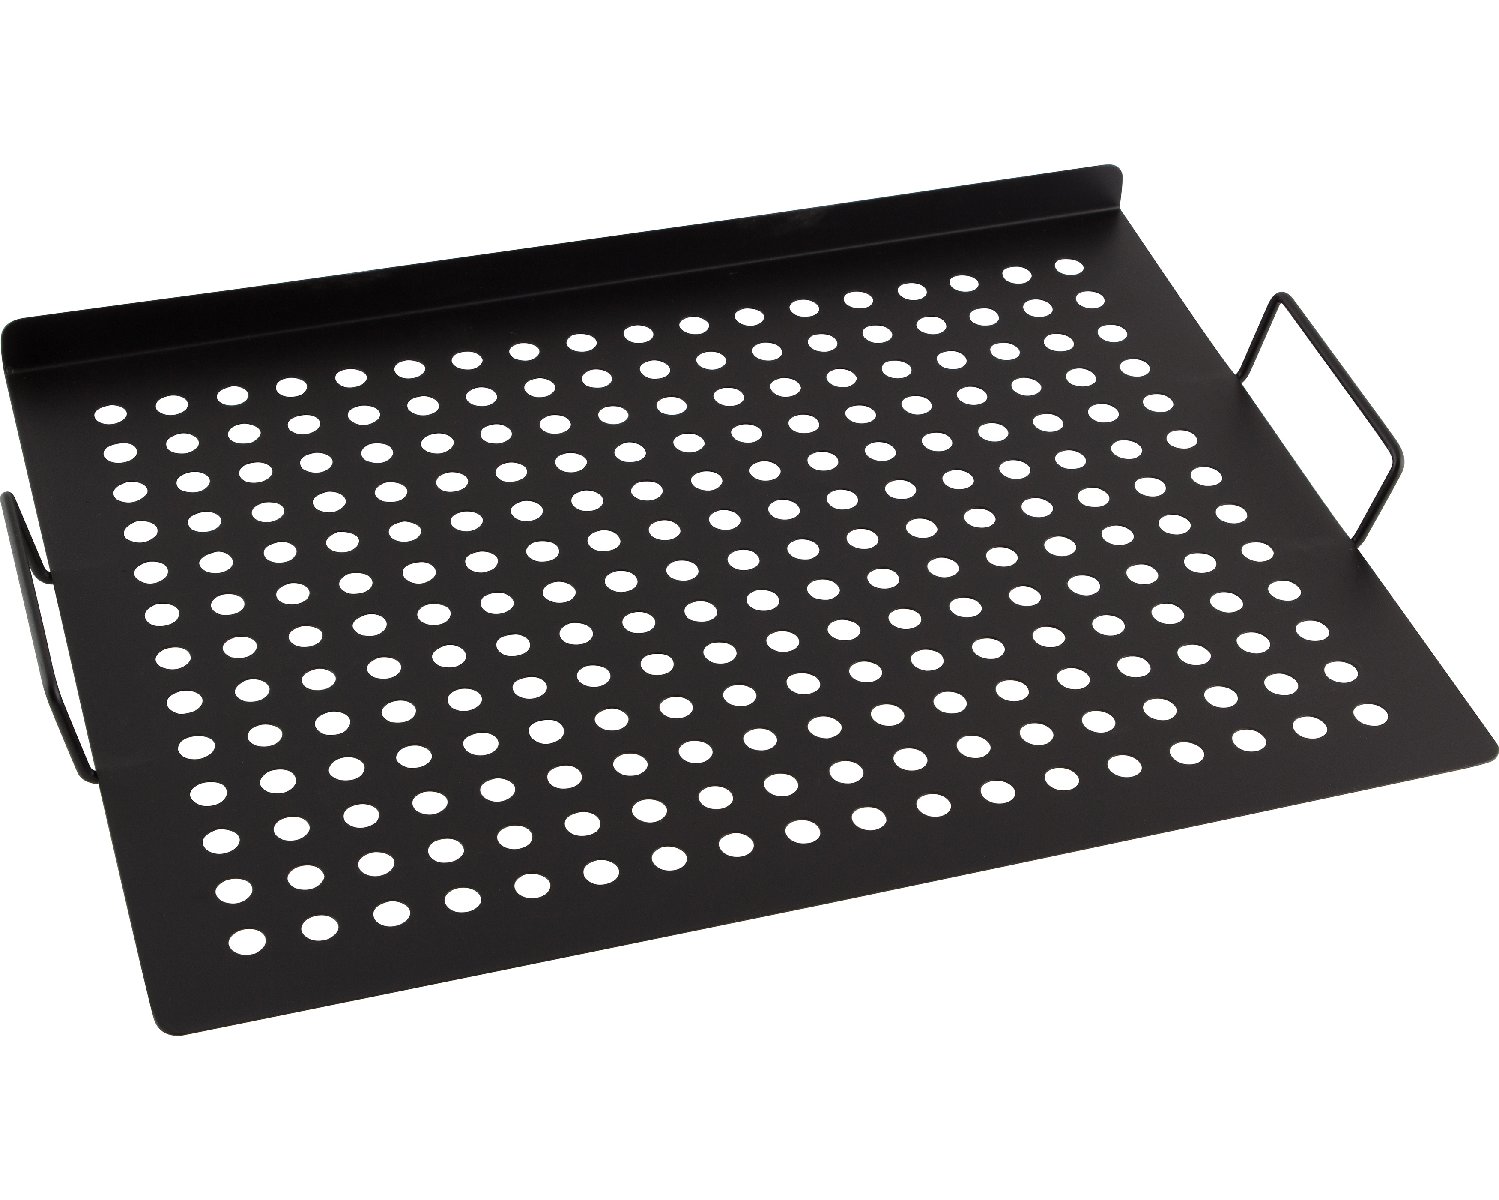 Решетка для мангала гриля с антипригарным покрытием ECOS RD-667, р-р 30x40см. (999667)